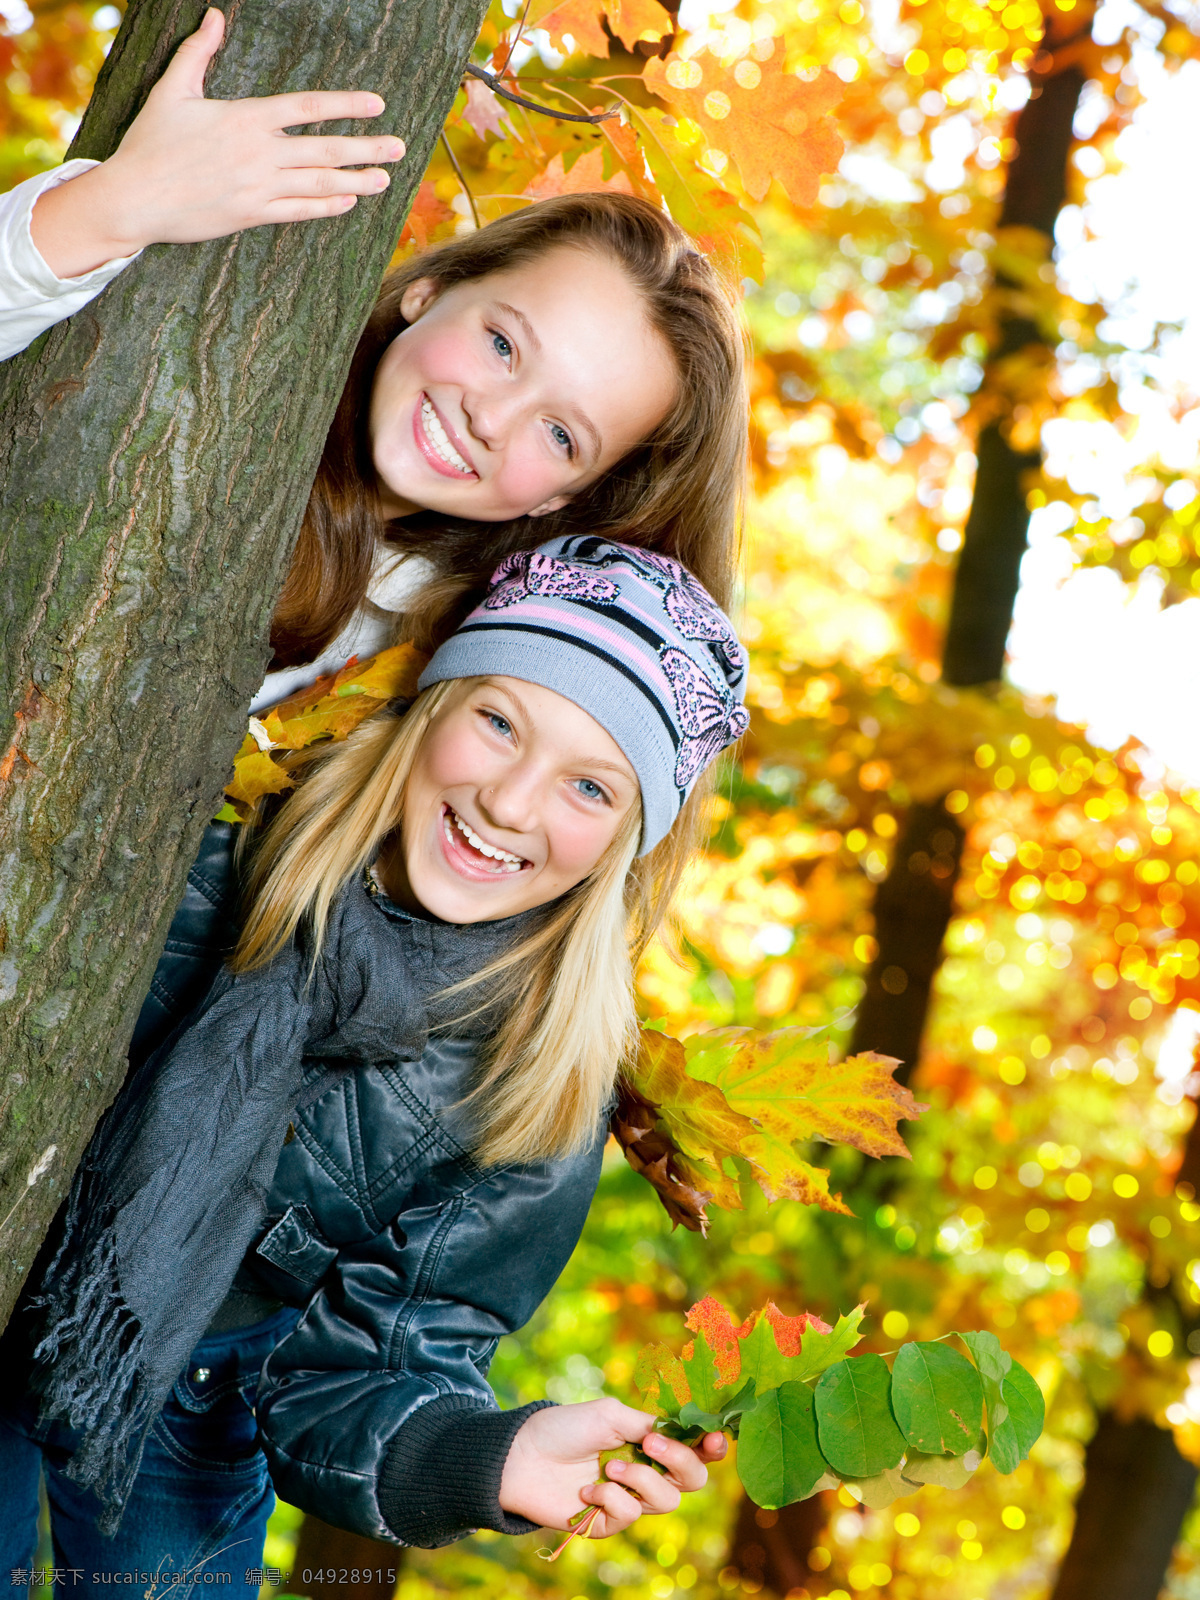 开心 微笑 姐妹 人物 女性 户外 风景 休闲 秋天 落叶 亲密 亲情 阳光 树林 背靠背 一家人 生活人物 人物图片